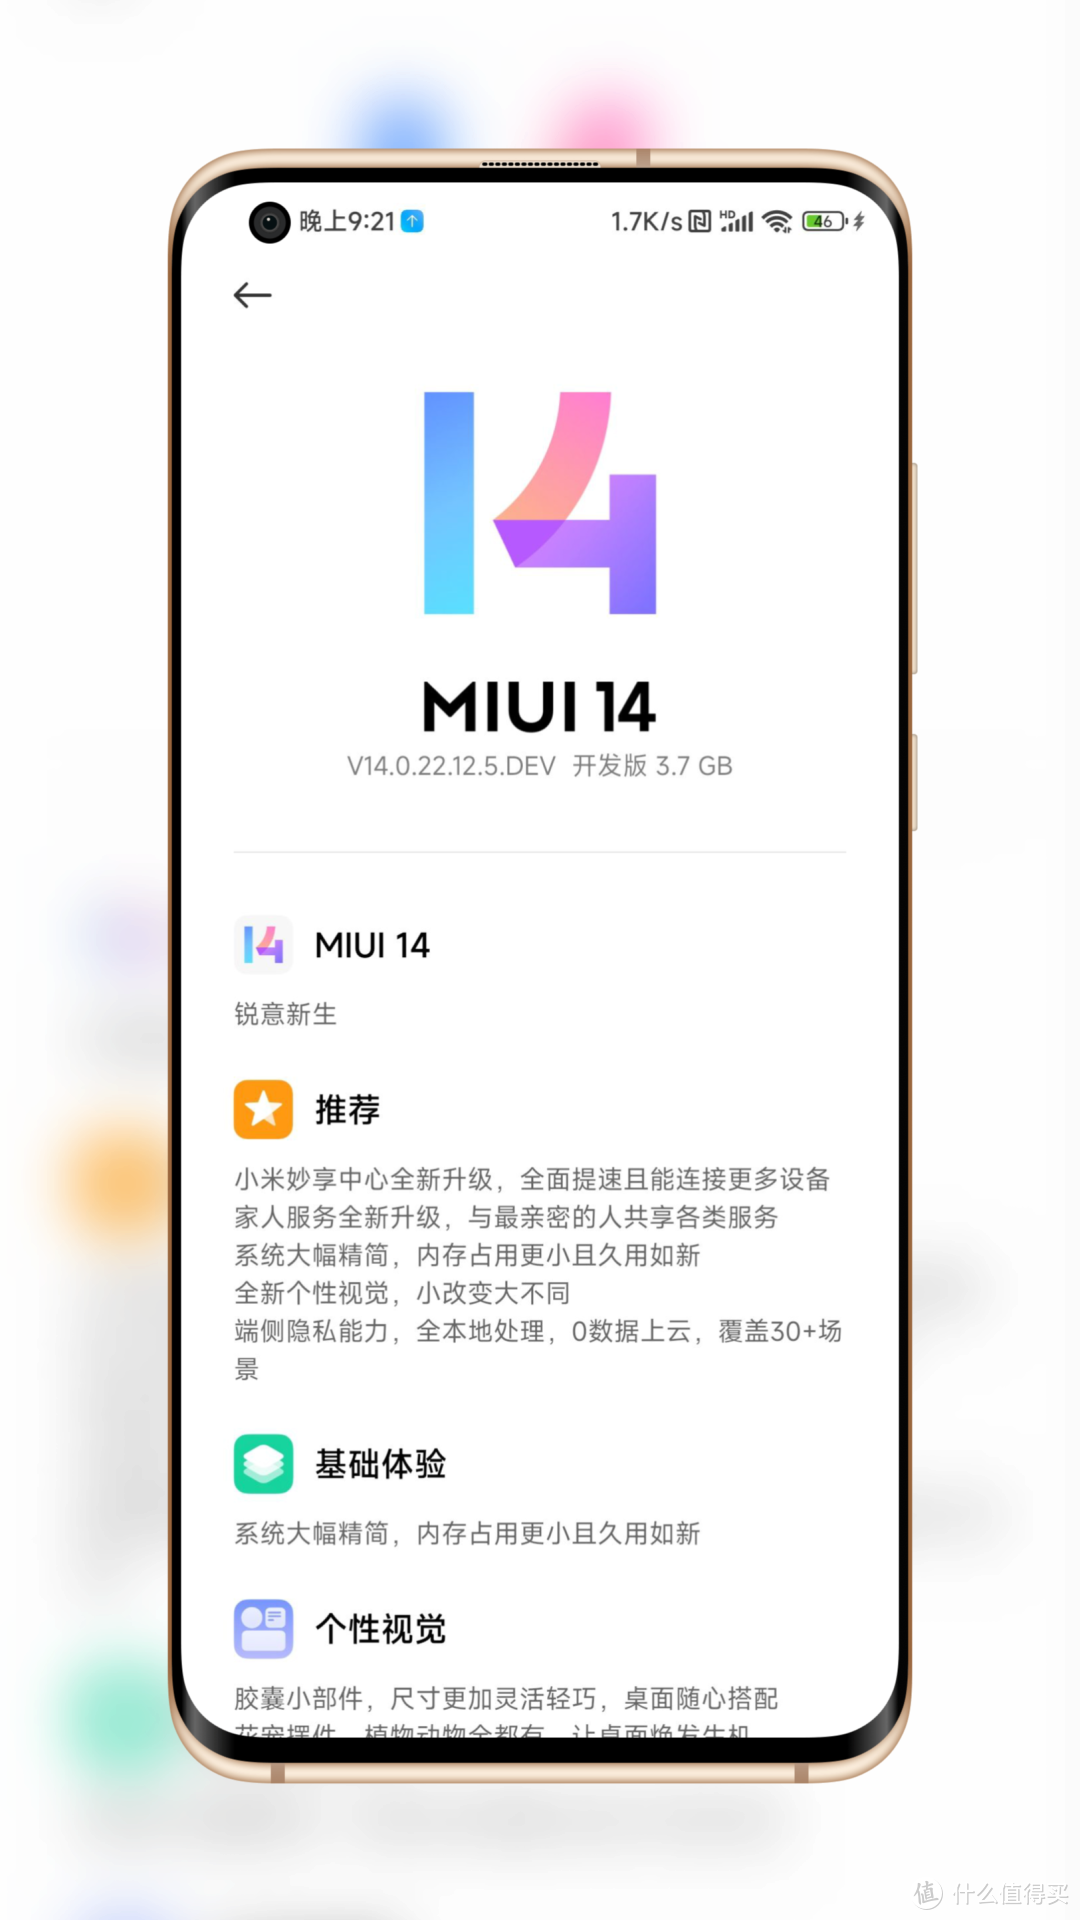 首个 MIUI 14 开发版 OTA 系统更新推送